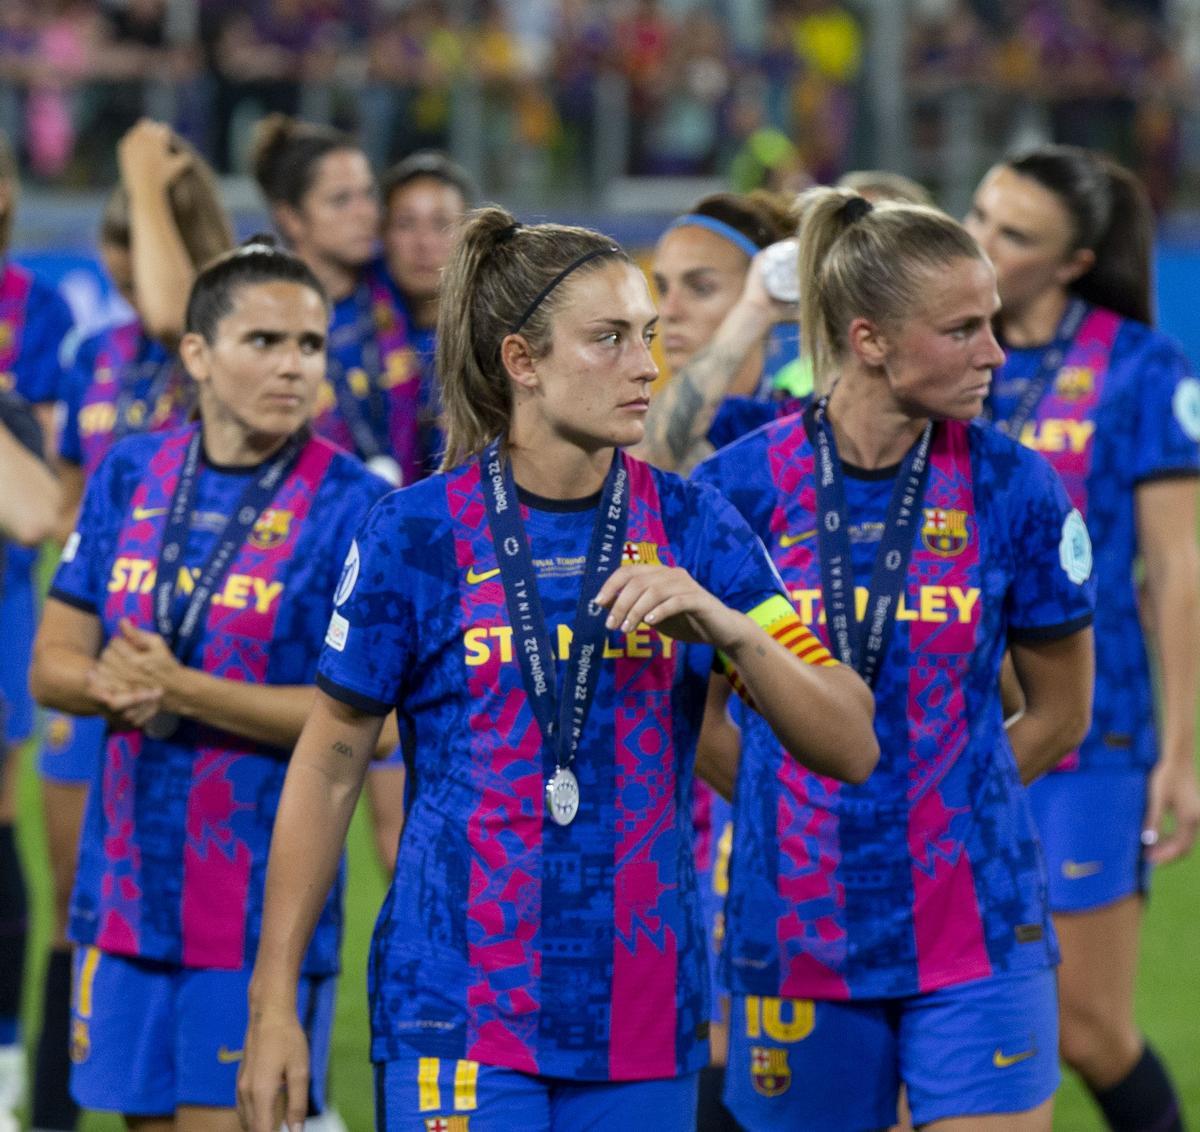 "El Barça femenino perdió una final, sí, pero le pusieron ganas y coraje"